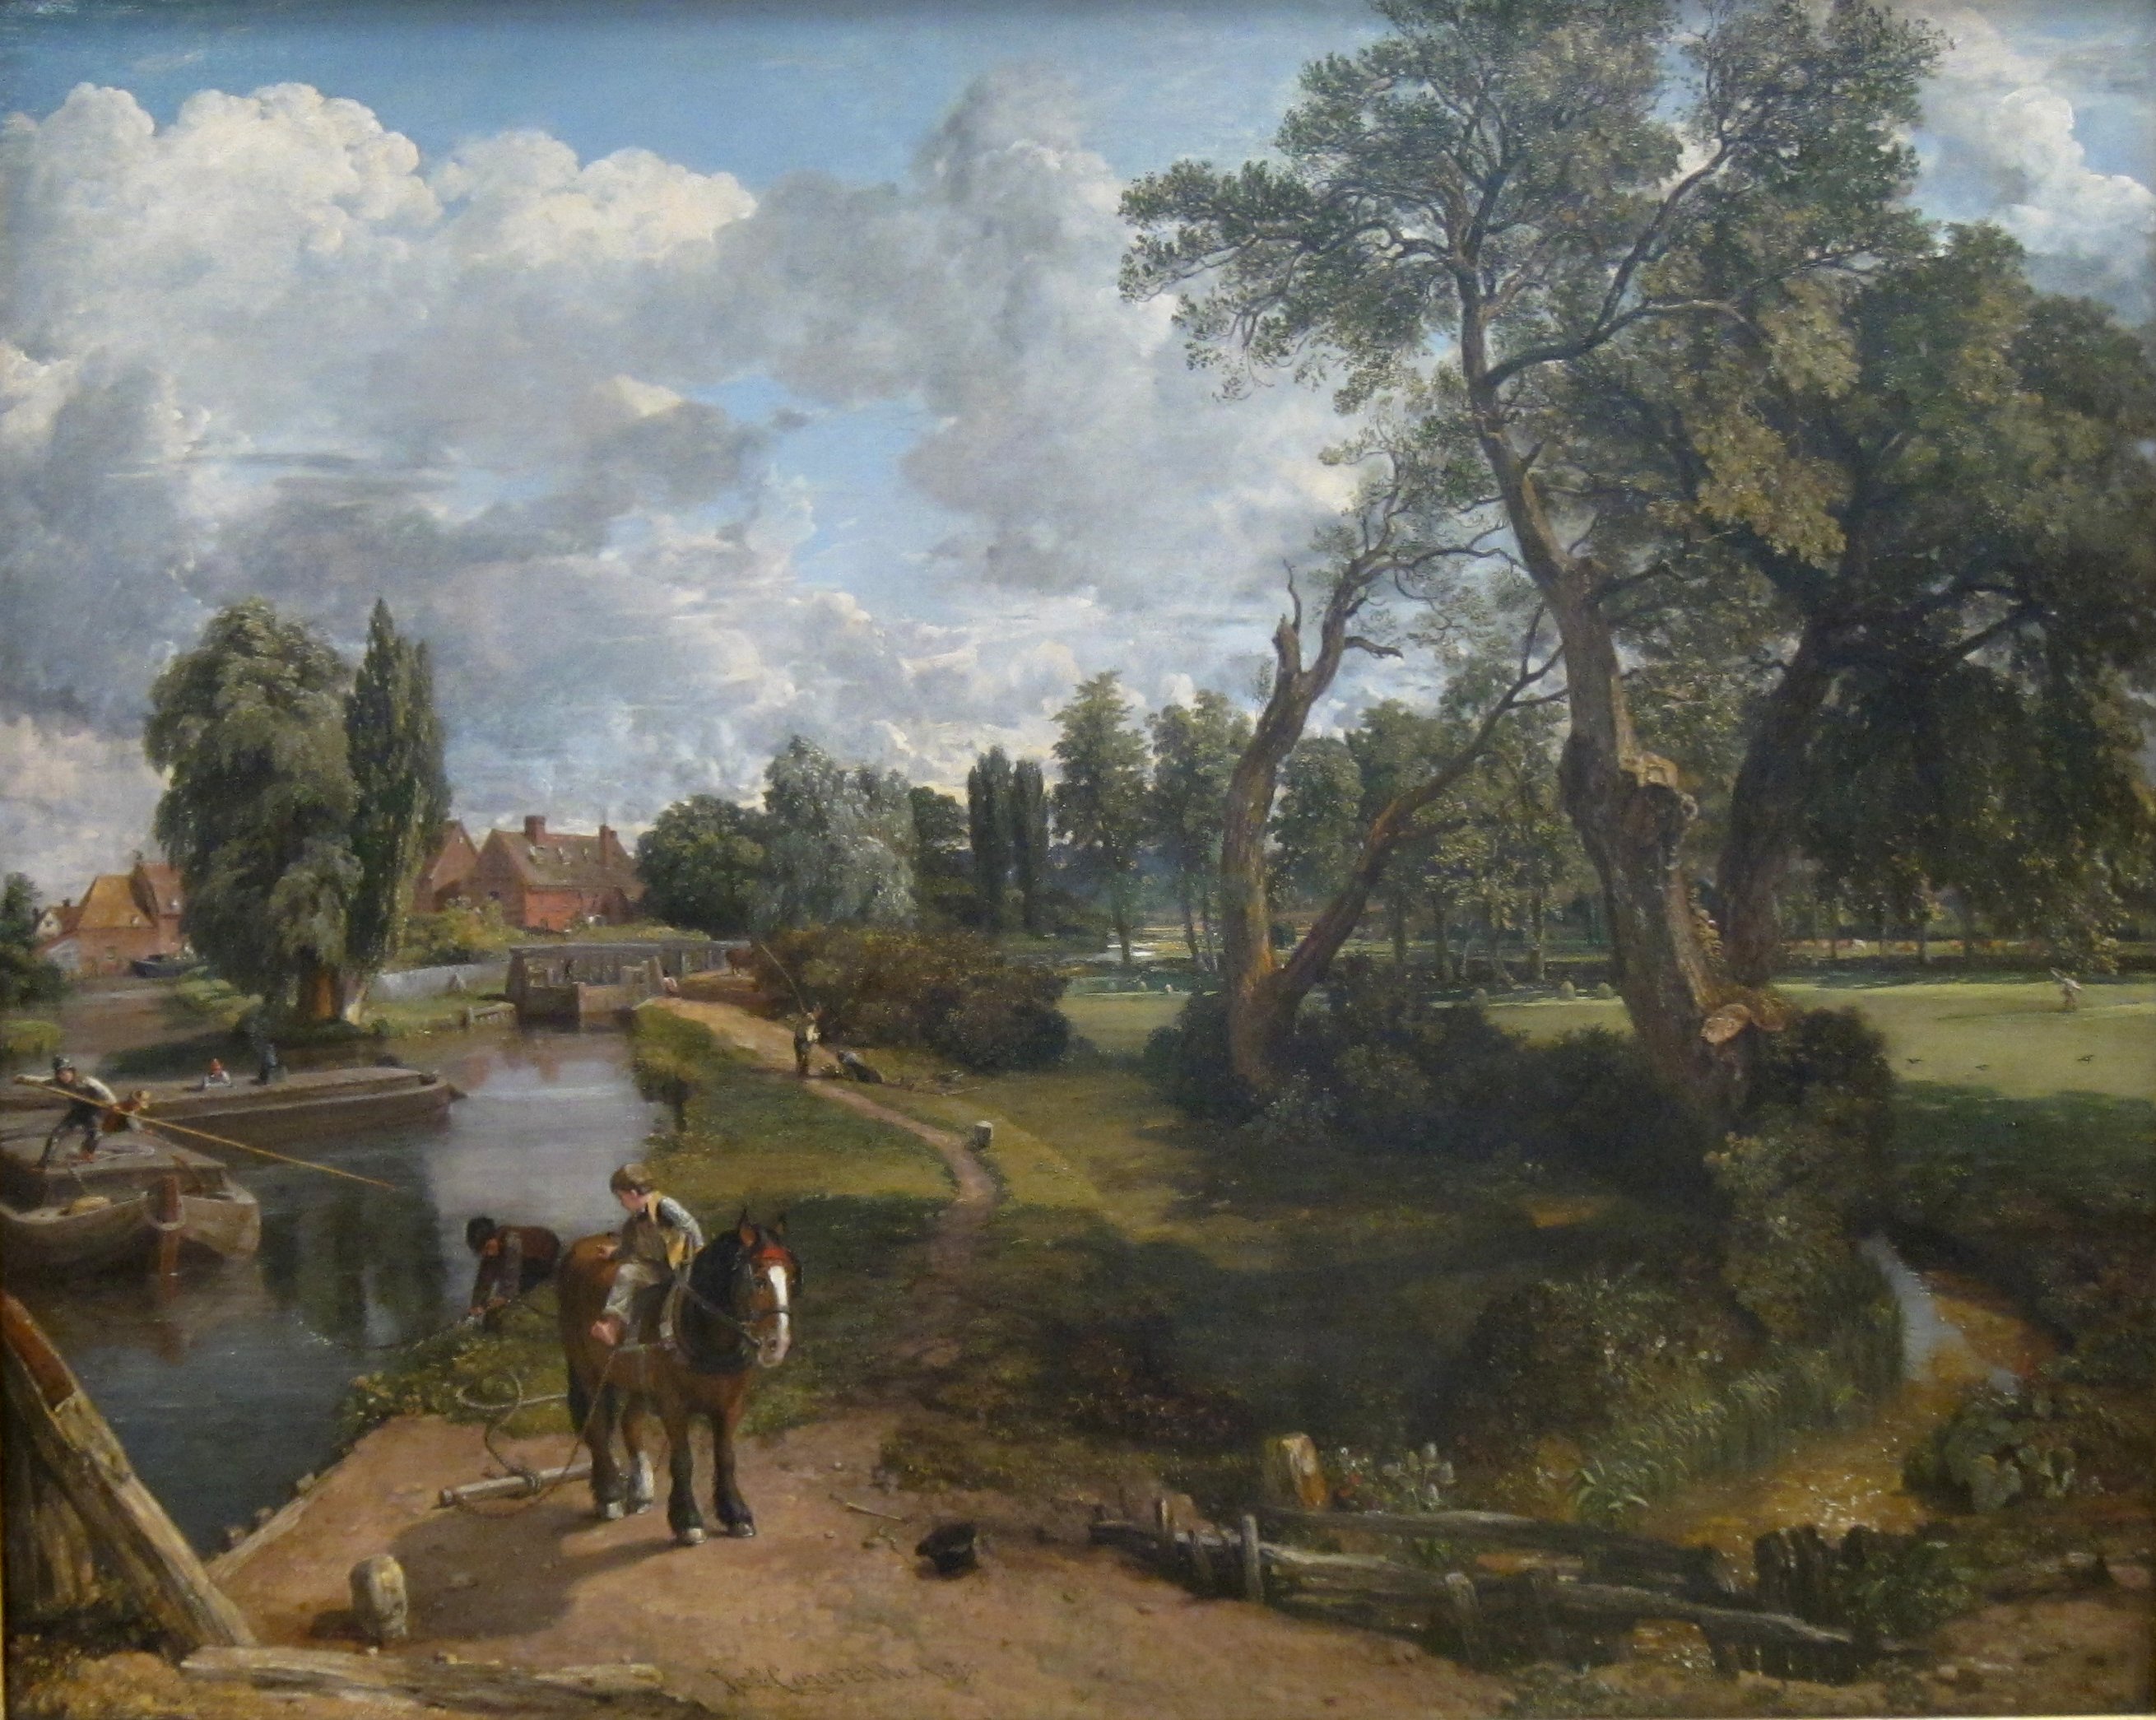 Flatfordi malom ("Jelenet egy hajózható folyón") by John Constable - 1816-17 - 101.6 x 127 cm 